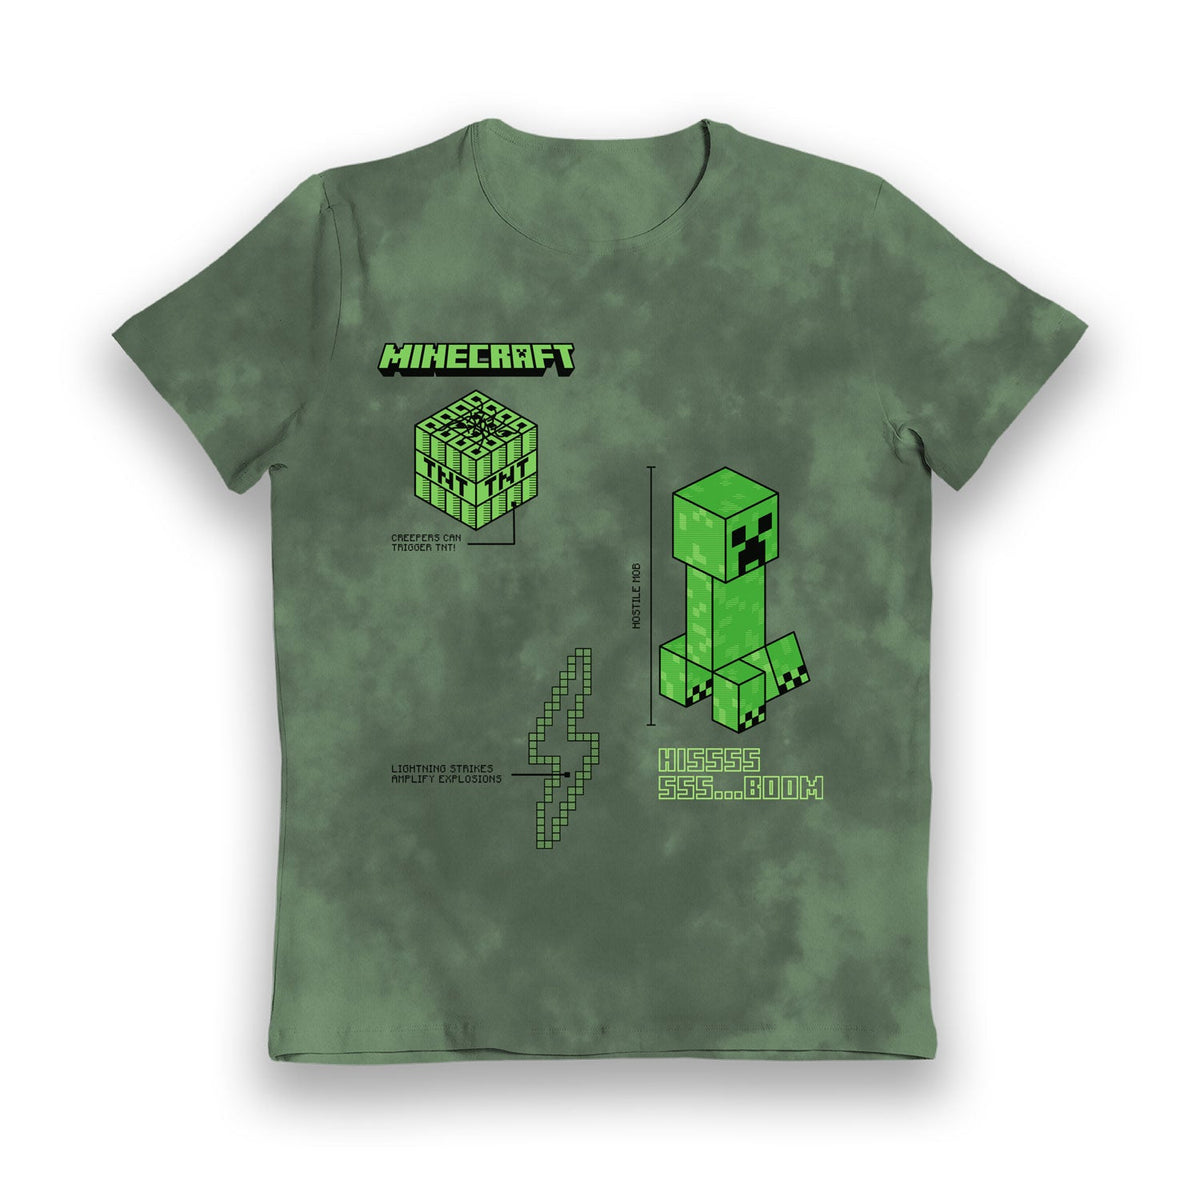 Minecraft Creeper Hissss Boom Tie Dye Kids T-Shirt